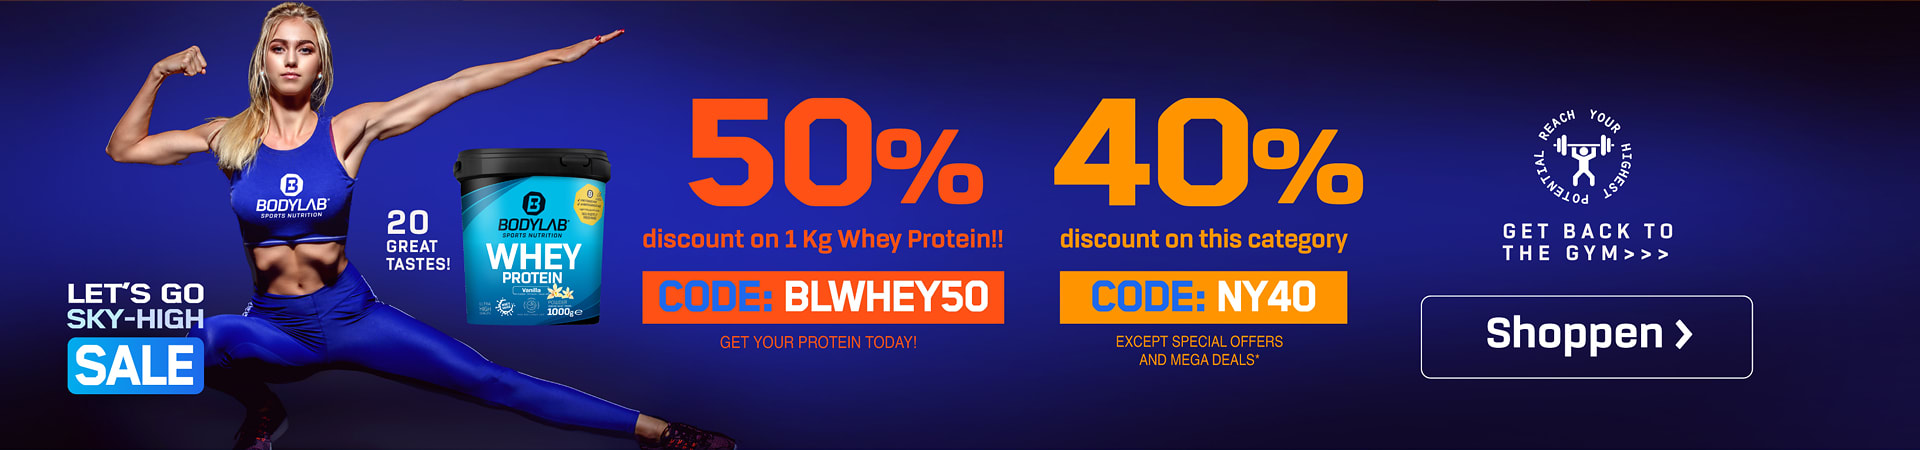 blaues Banner mit Athletin und dem Verweis auf die beiden Angebote mit 50% auf Whey 1kg und bis 40% auf Bodylab Produkte